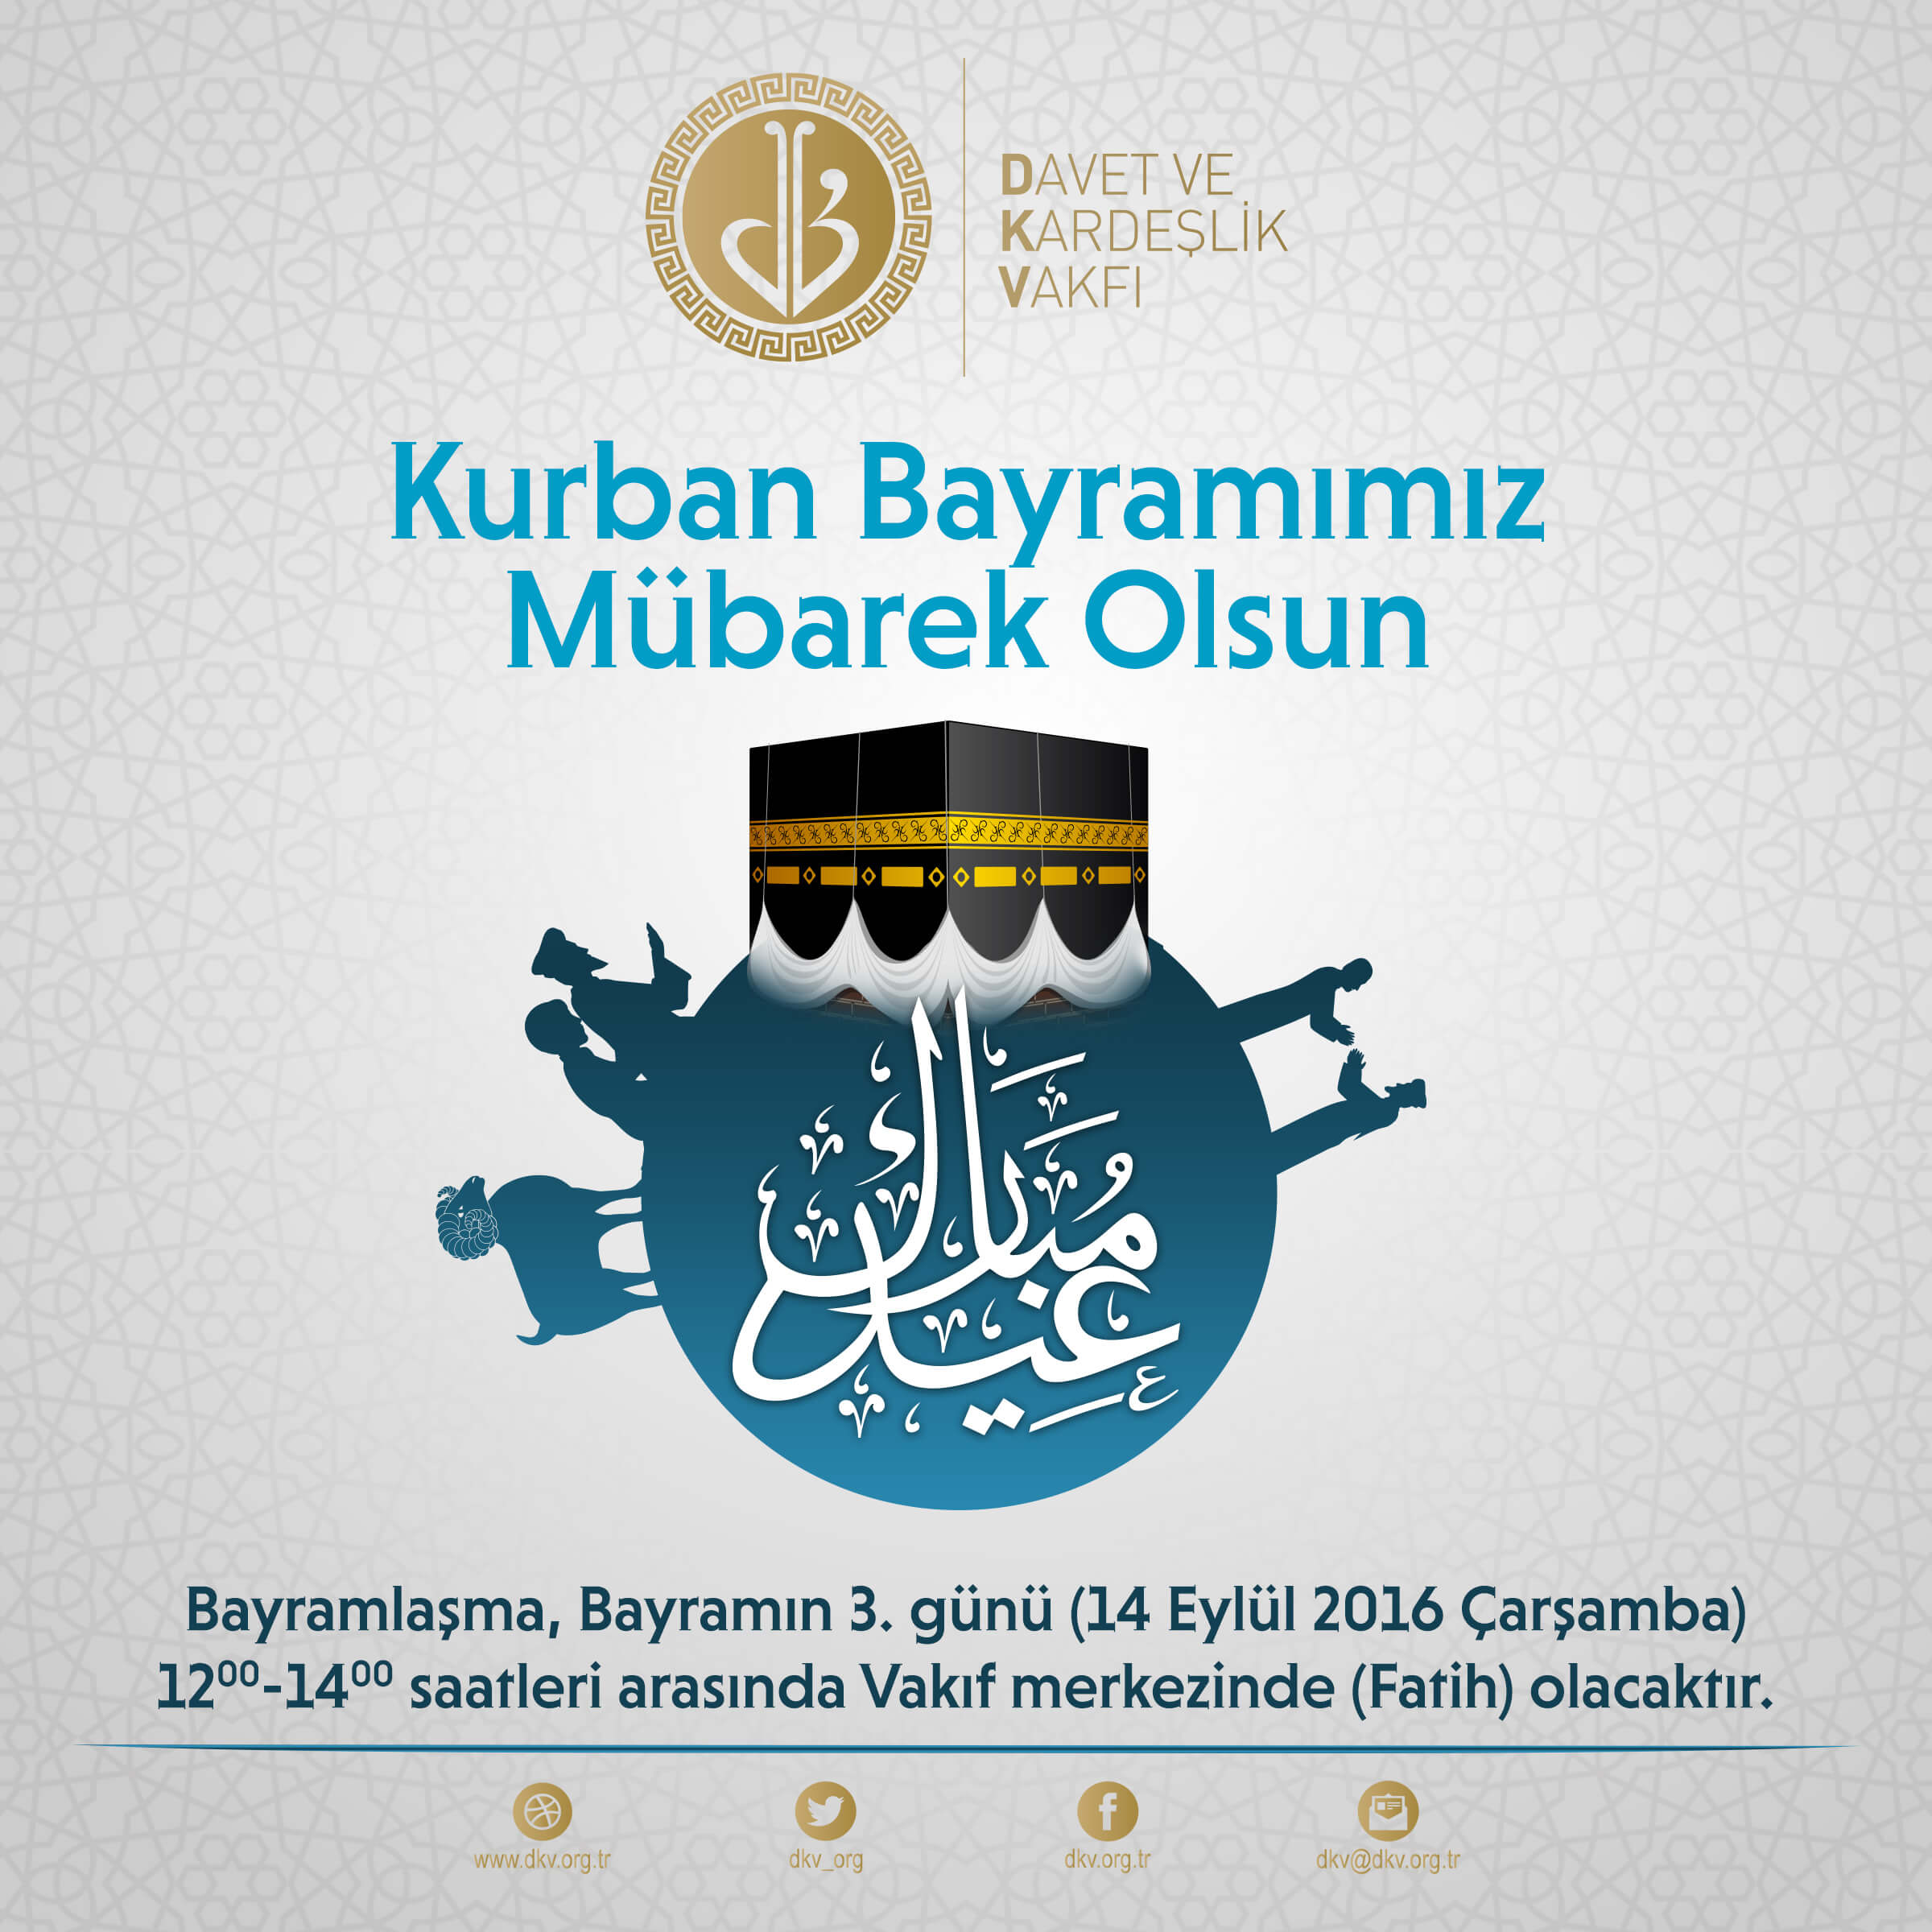 kurban-bayraminiz-mubarek-olsun-2016